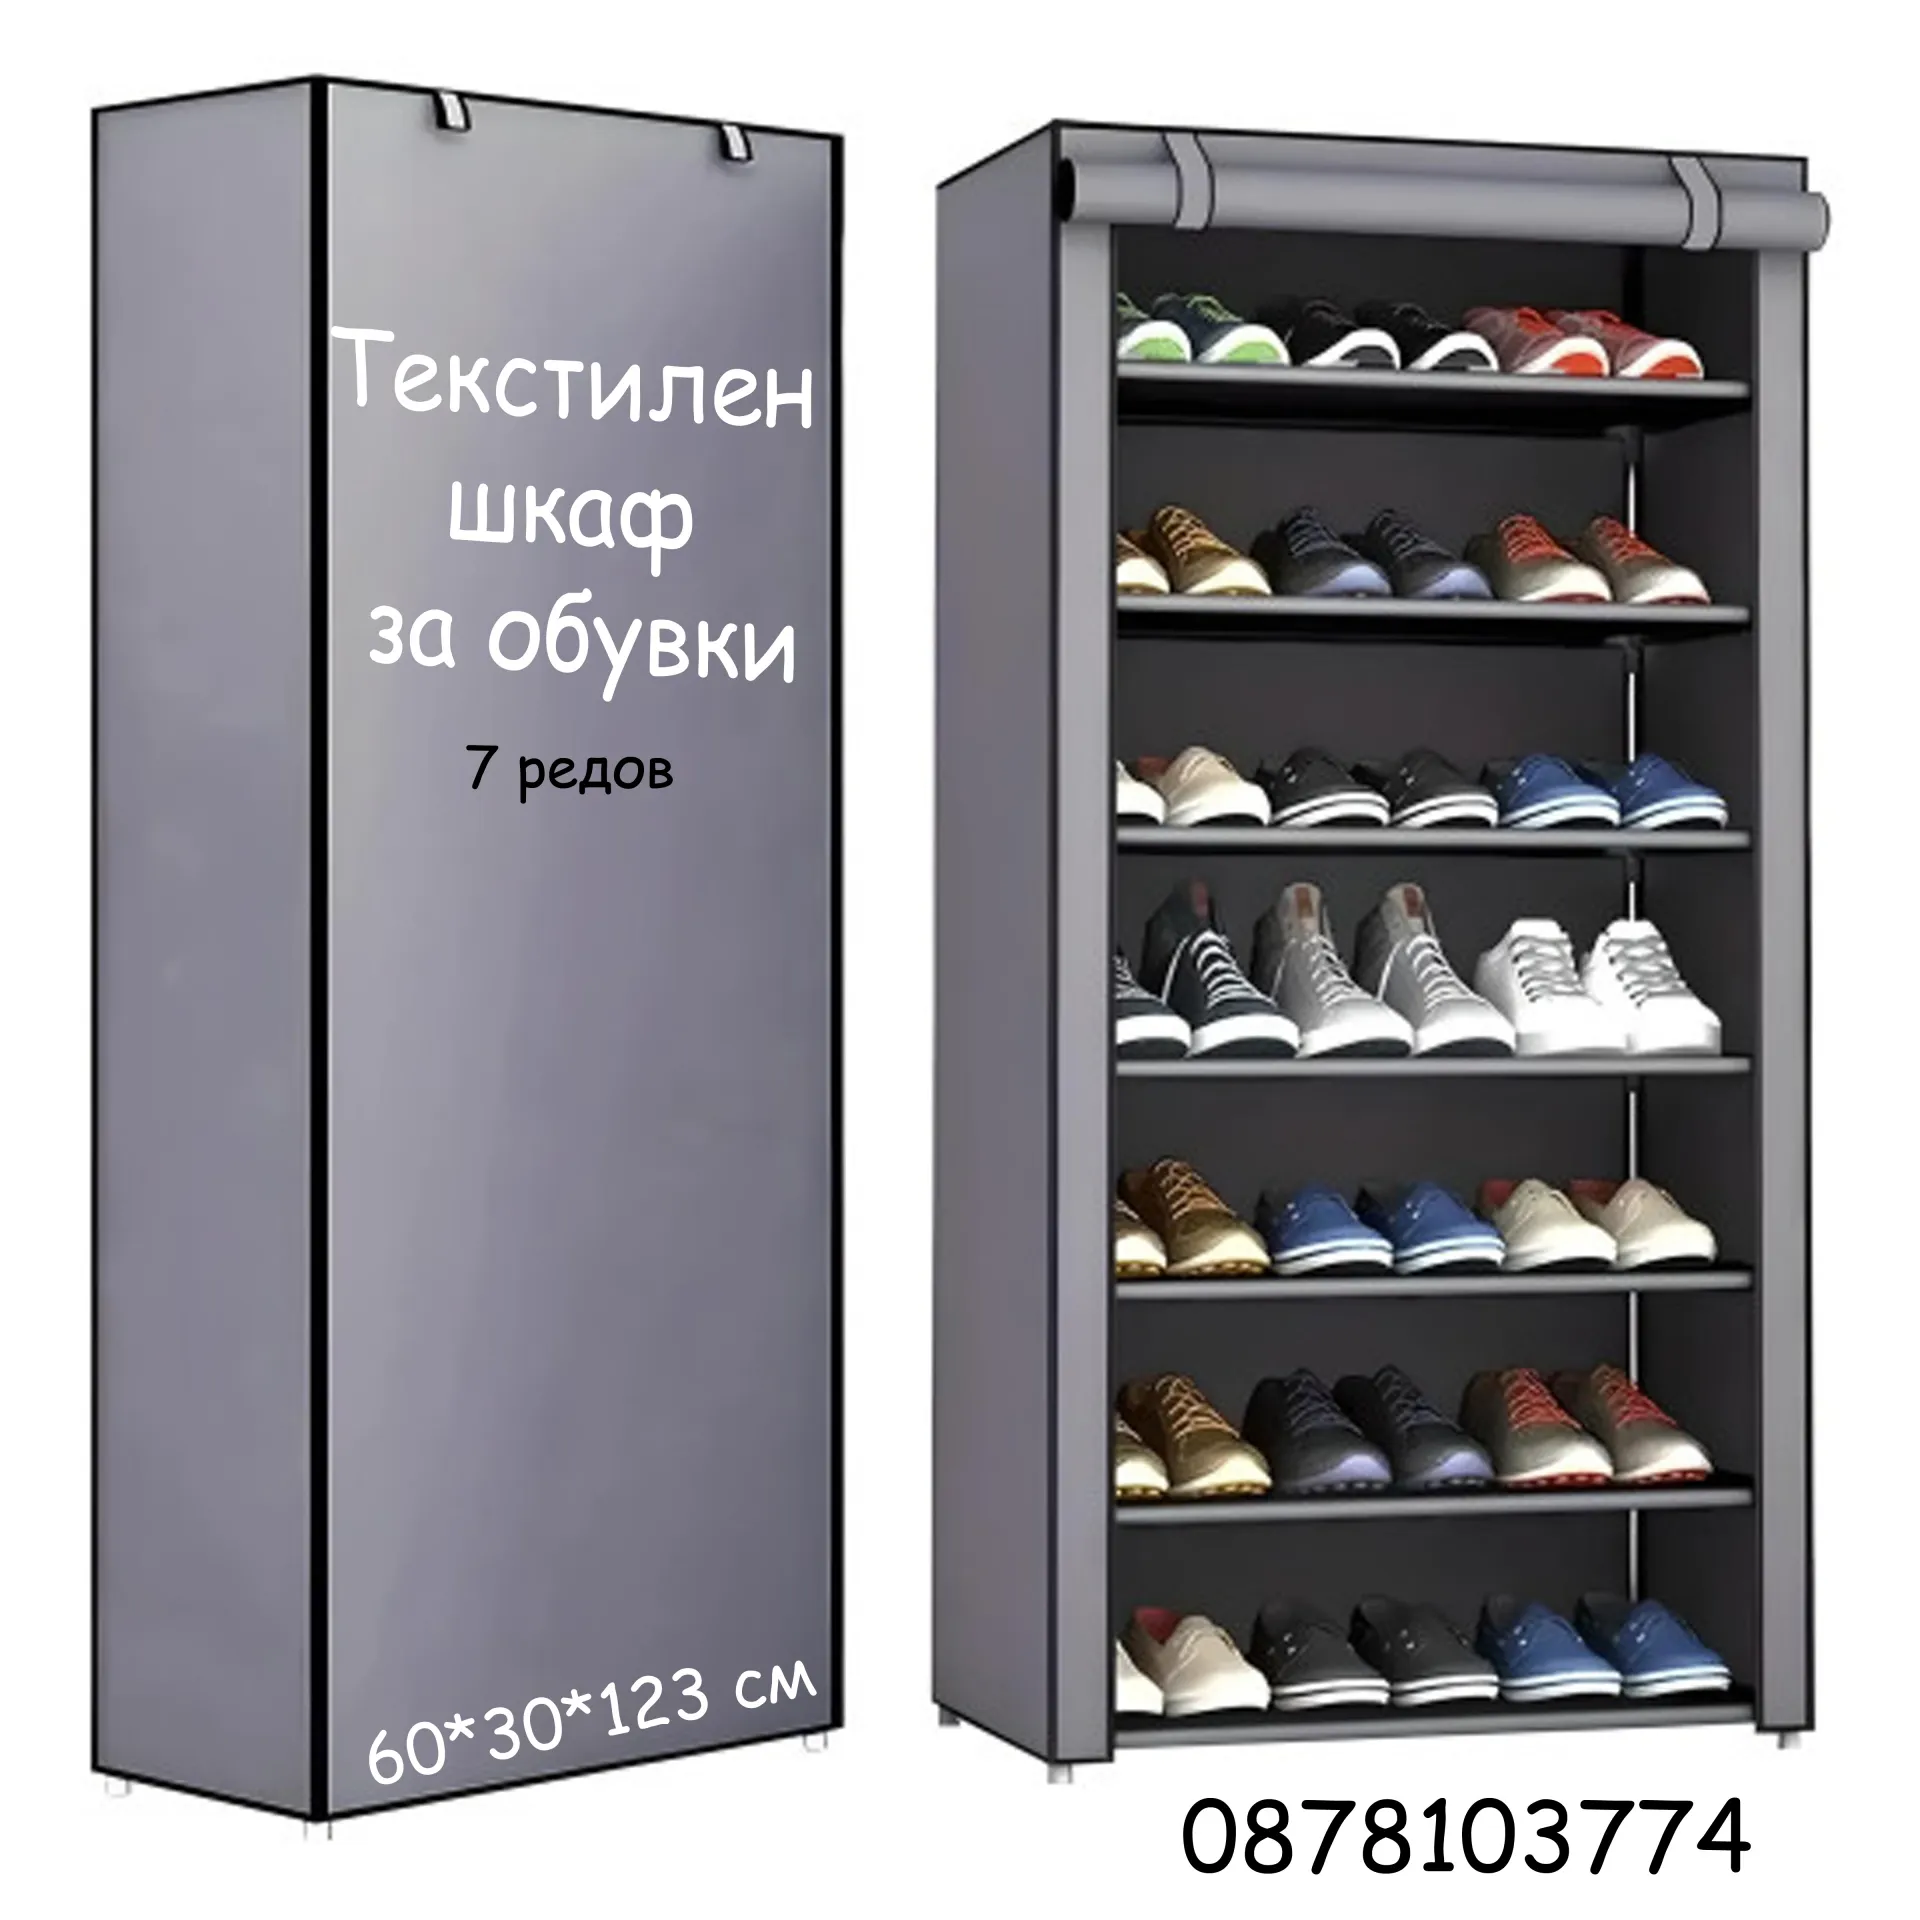 Текстилен шкаф за обувки в сиво и бежово - 7 редов 1